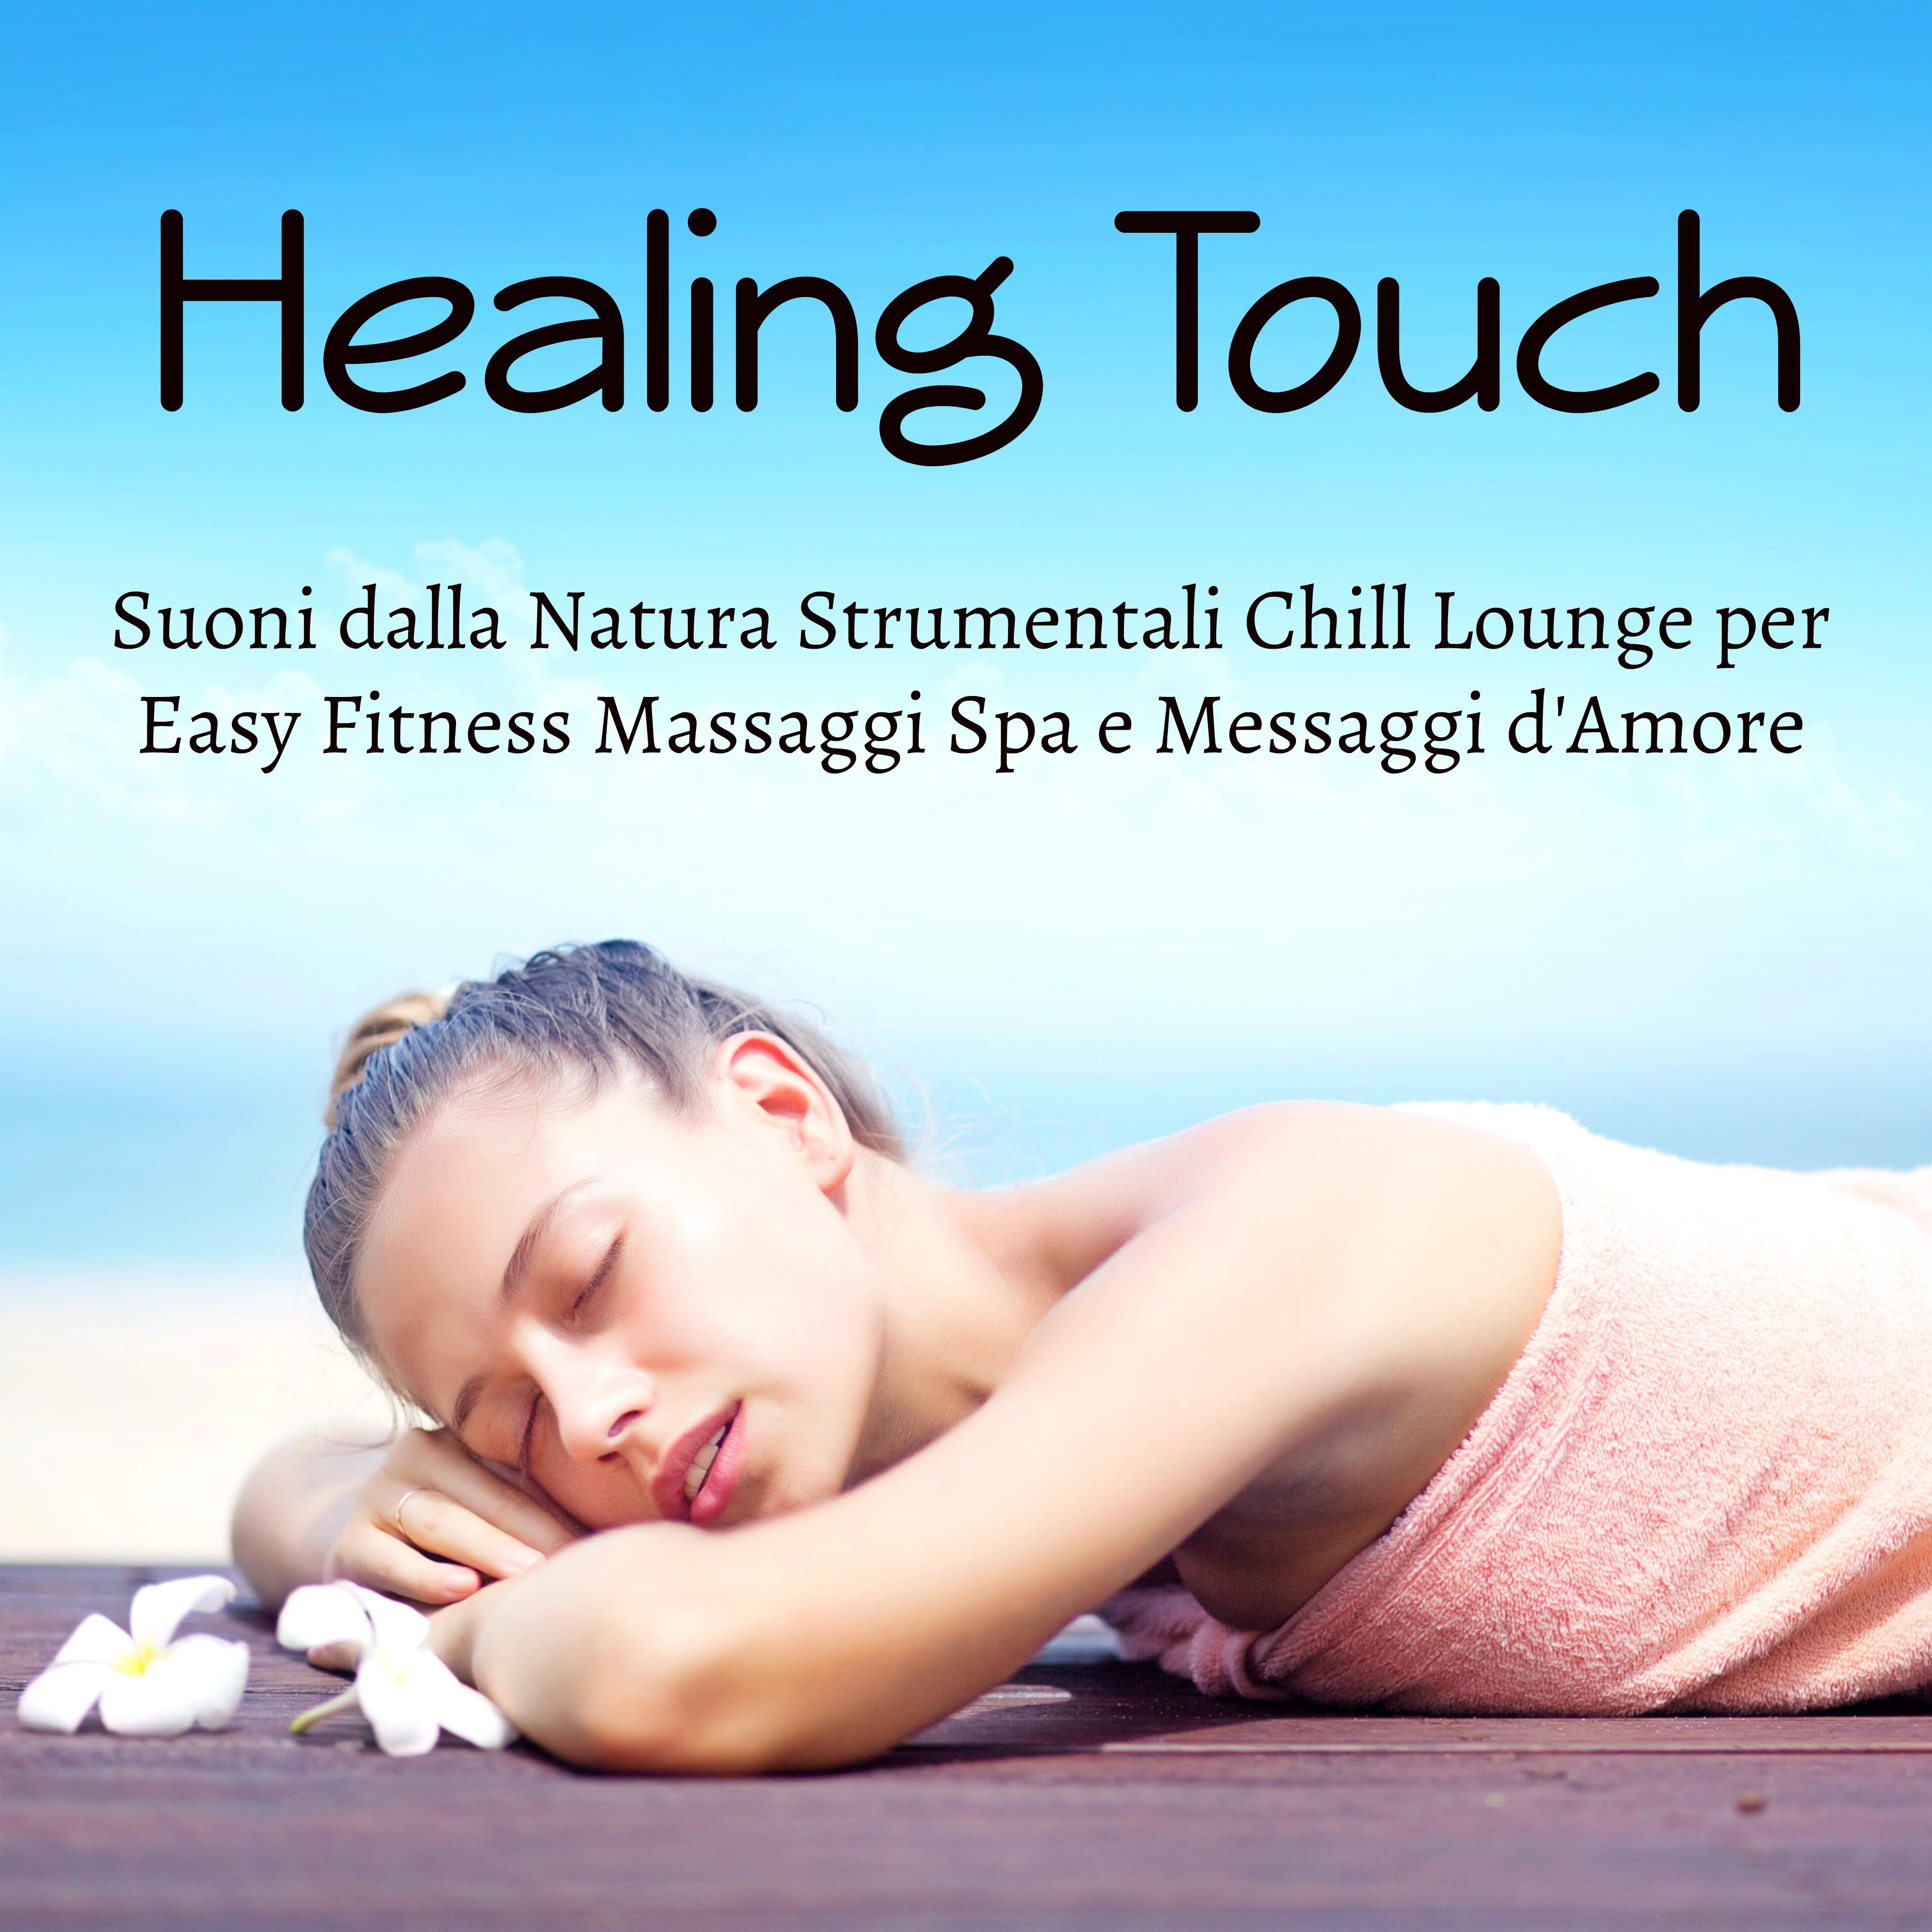 Healing Touch - Suoni dalla Natura Strumentali Chill Lounge per Easy Fitness Massaggi Spa e Messaggi d'Amore